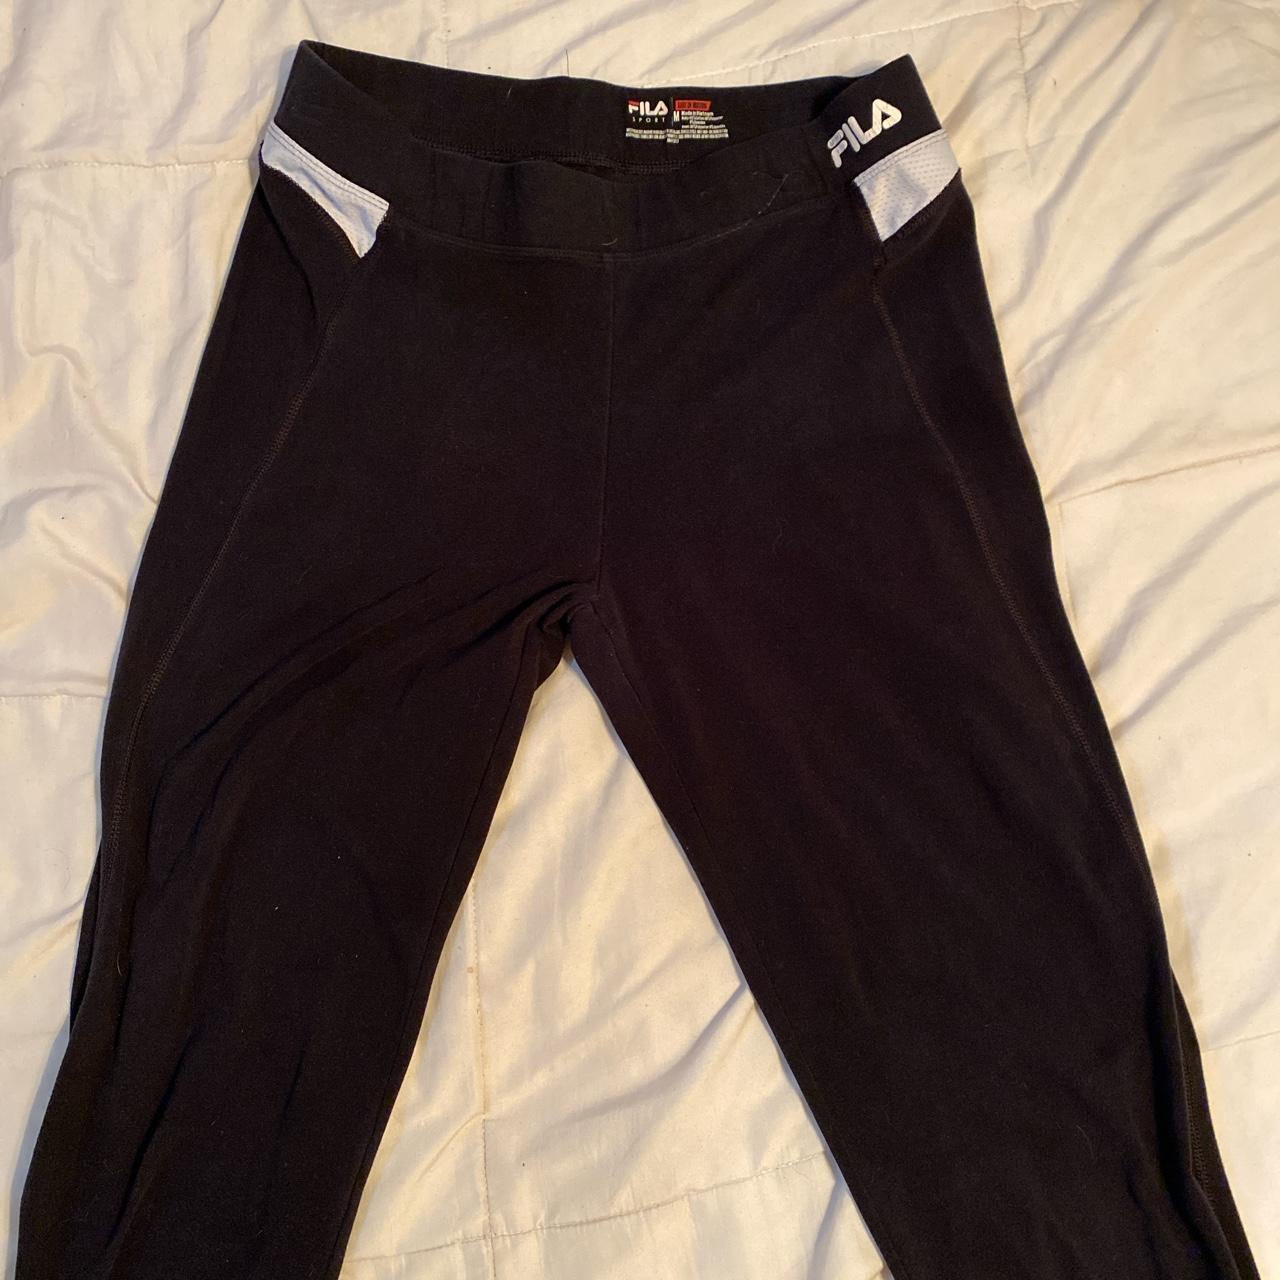 2000s Fila women's leggings (flared) these will make - Depop